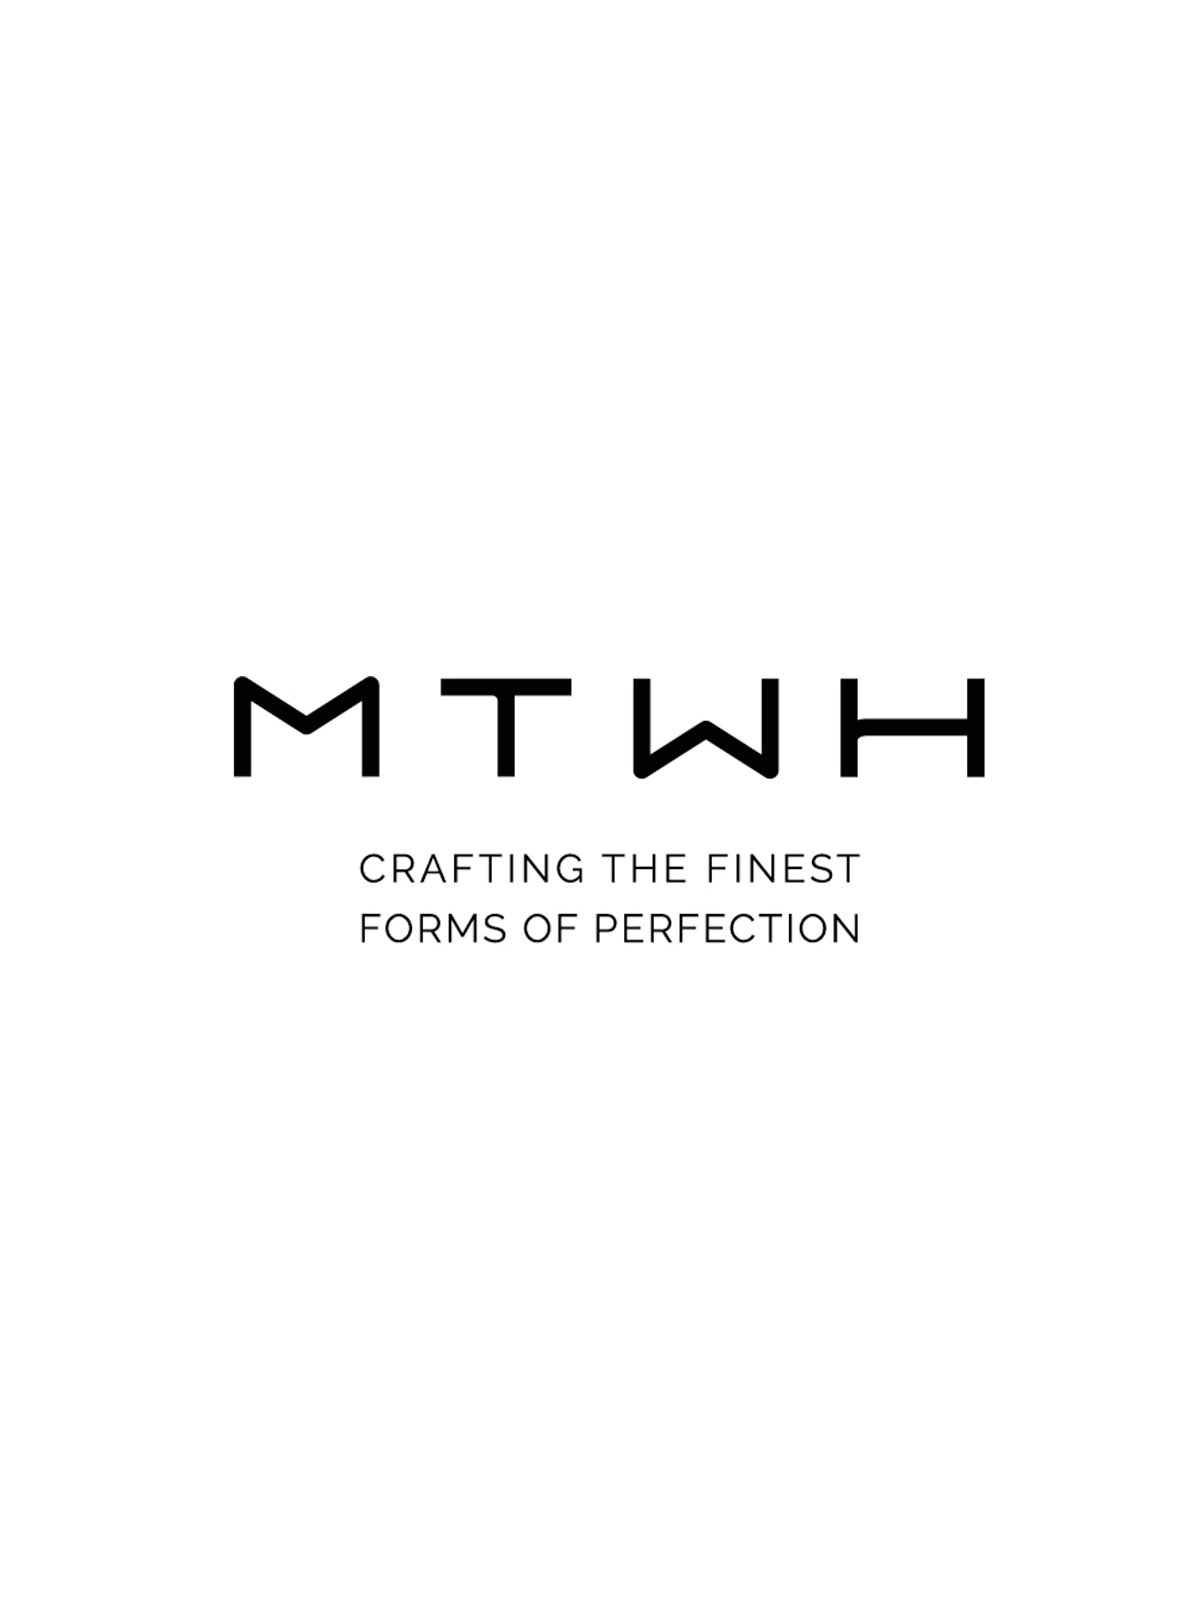 Mtwh si rafforza con l’acquisizione del Gruppo Metalstudio